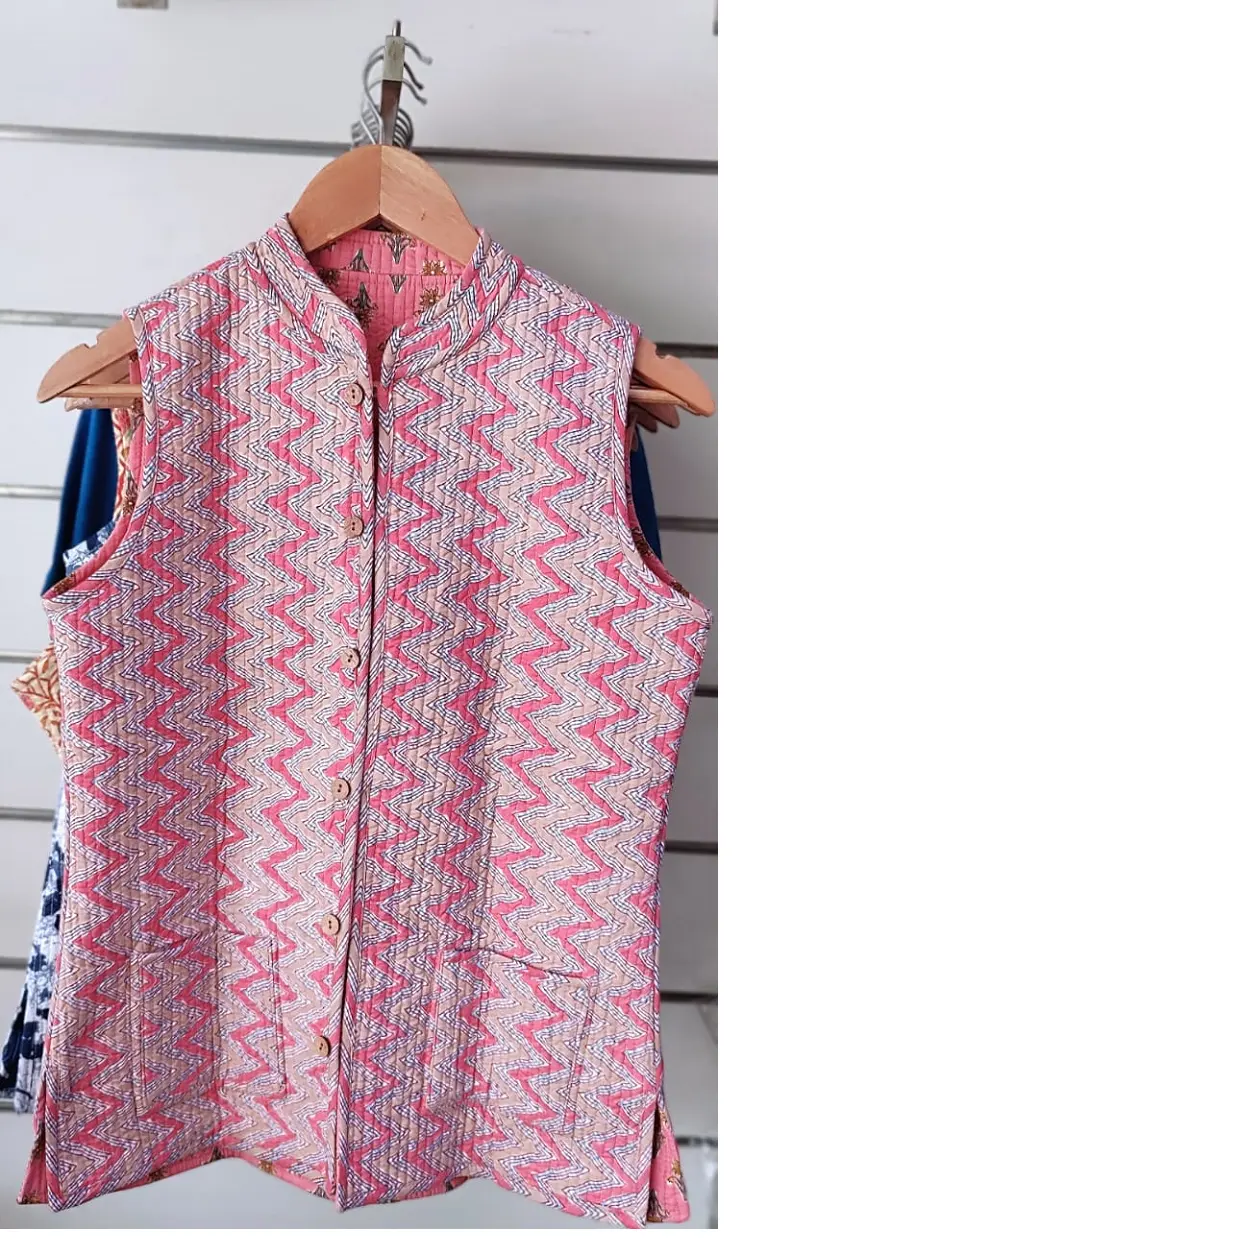 Сделанные на заказ переработанные куртки kantha nehru идеально подходят для женской одежды, дизайнеров и магазинов одежды для перепродажи